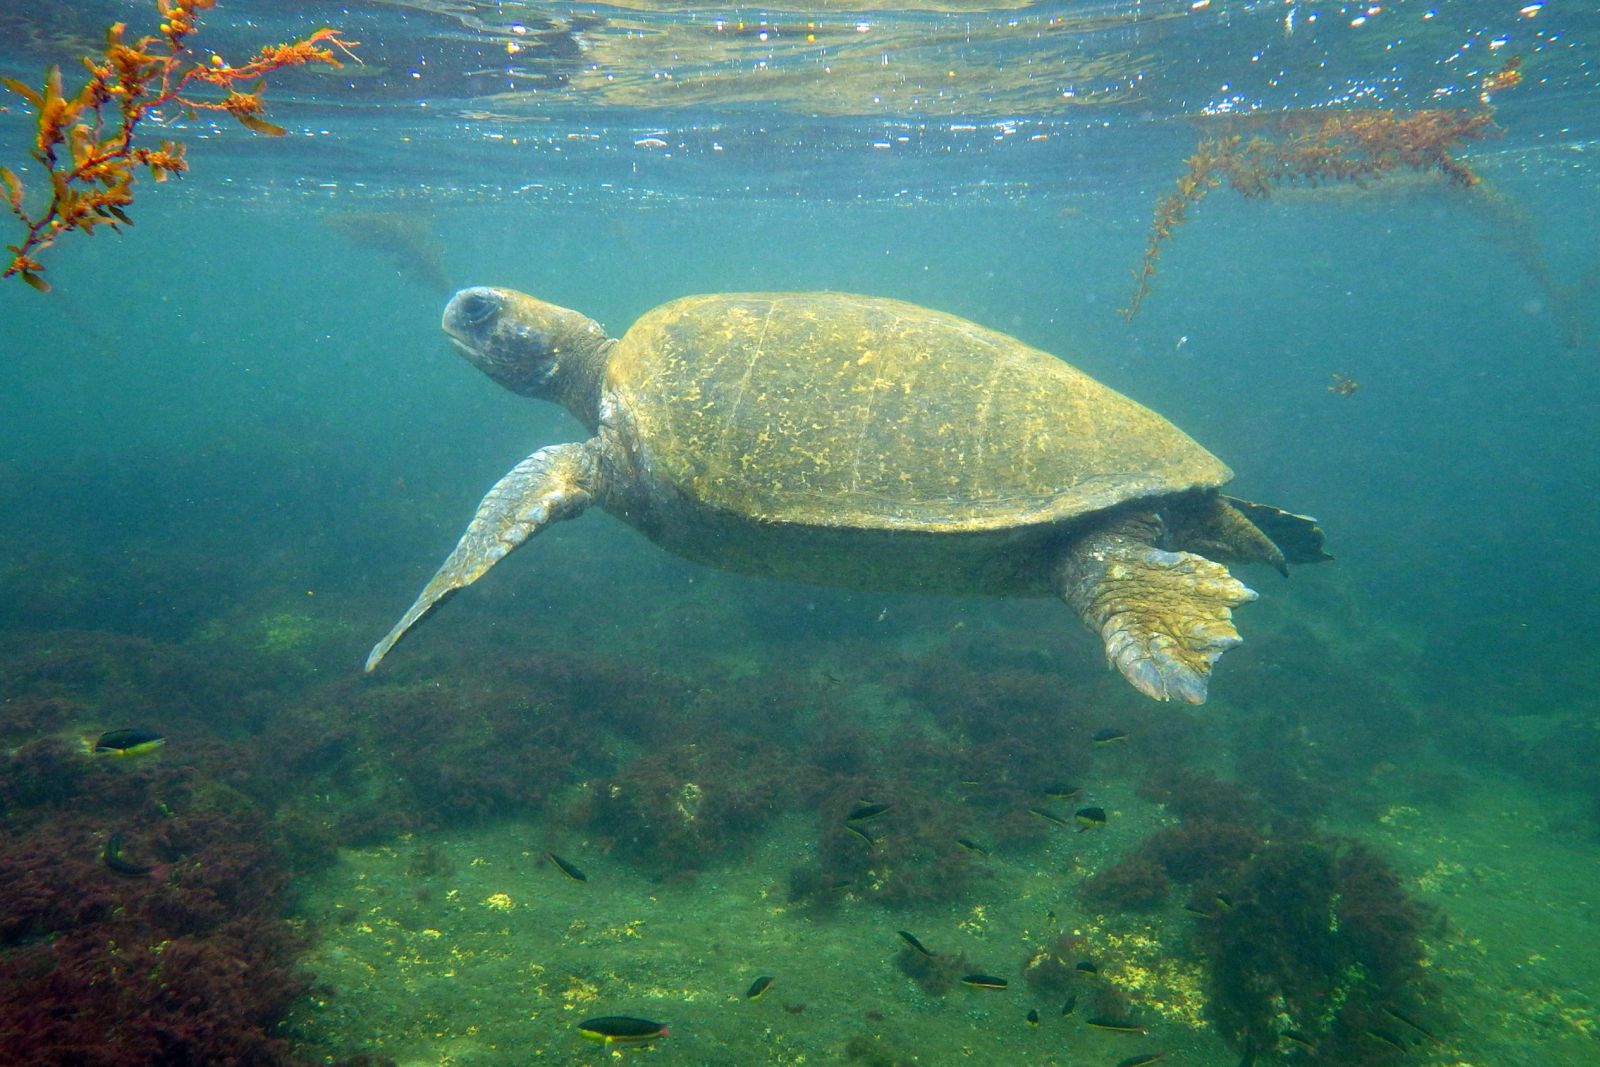 Meeresschildkröte beim Schnorcheln auf Galapagos